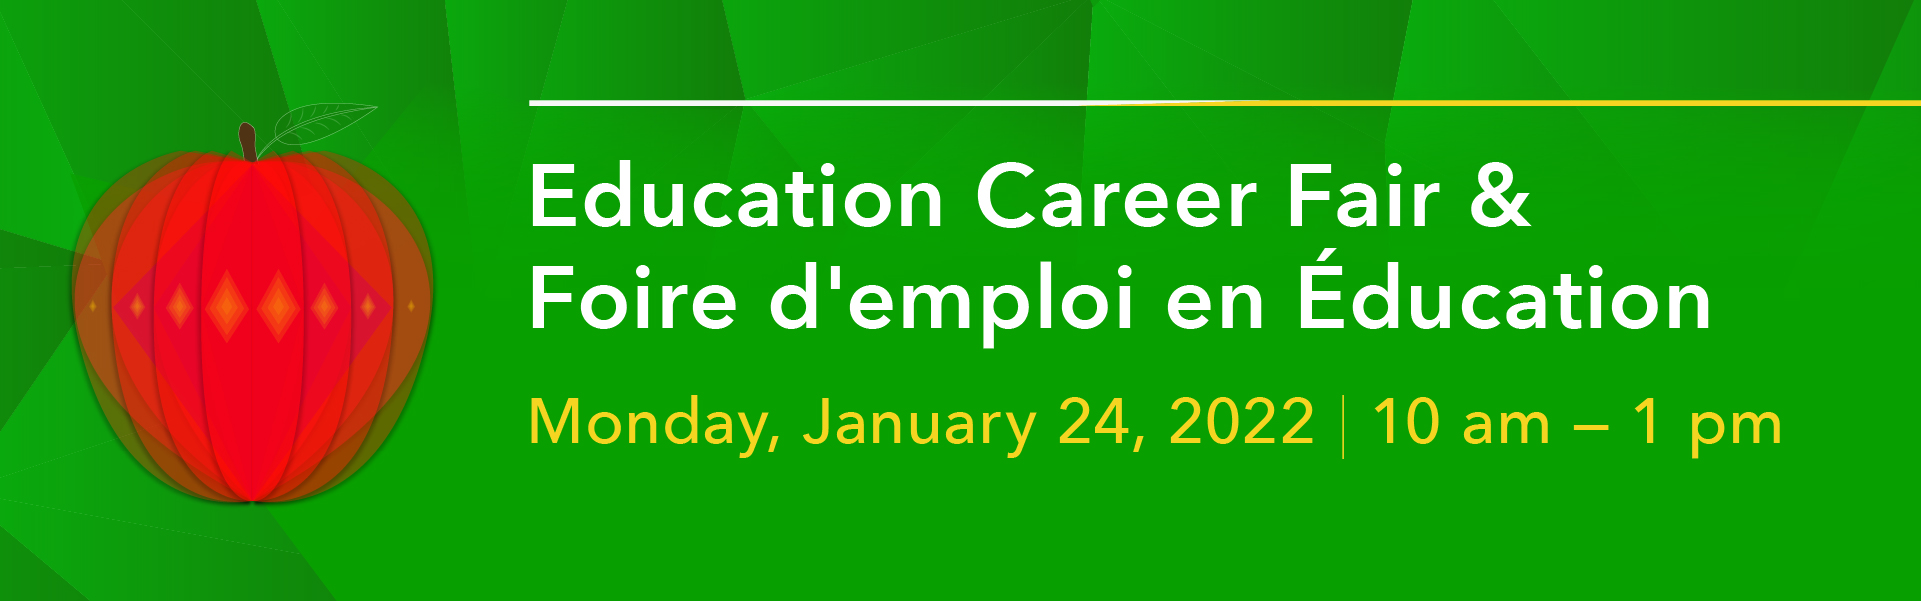 education career fair banner with apple